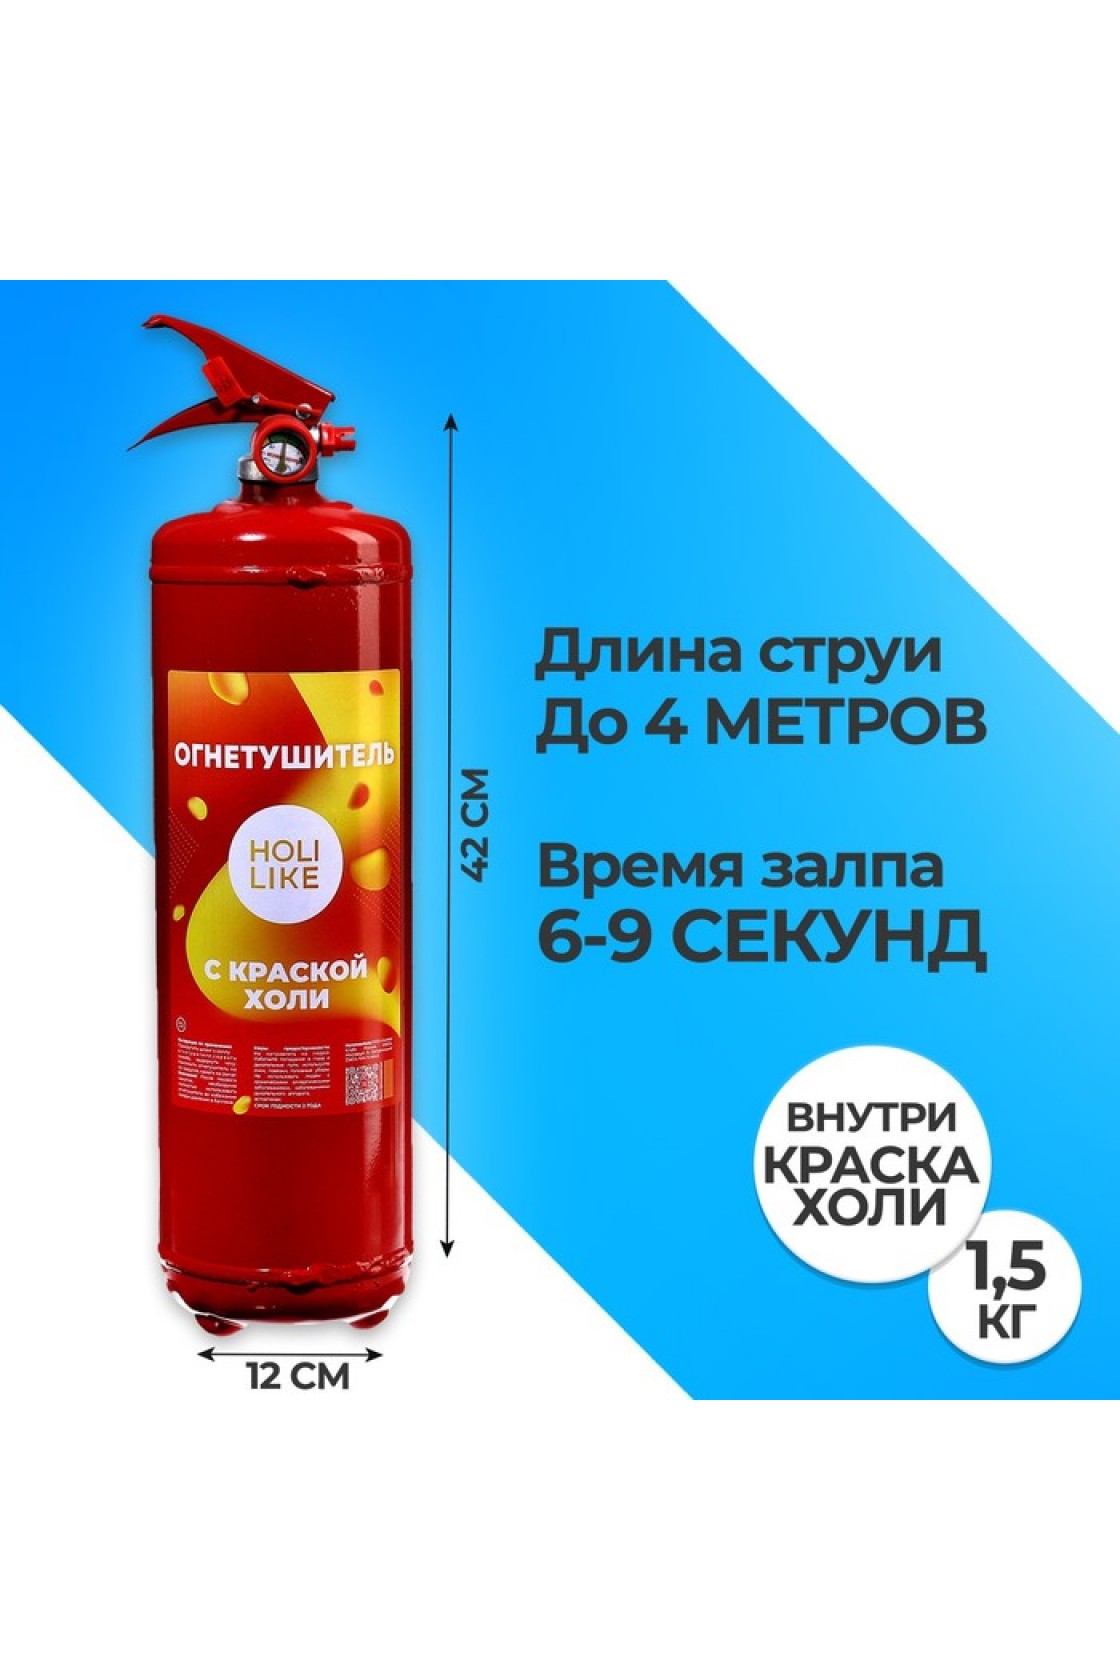 Купить Огнетушитель Gender Party в Новосибирске с доставкой